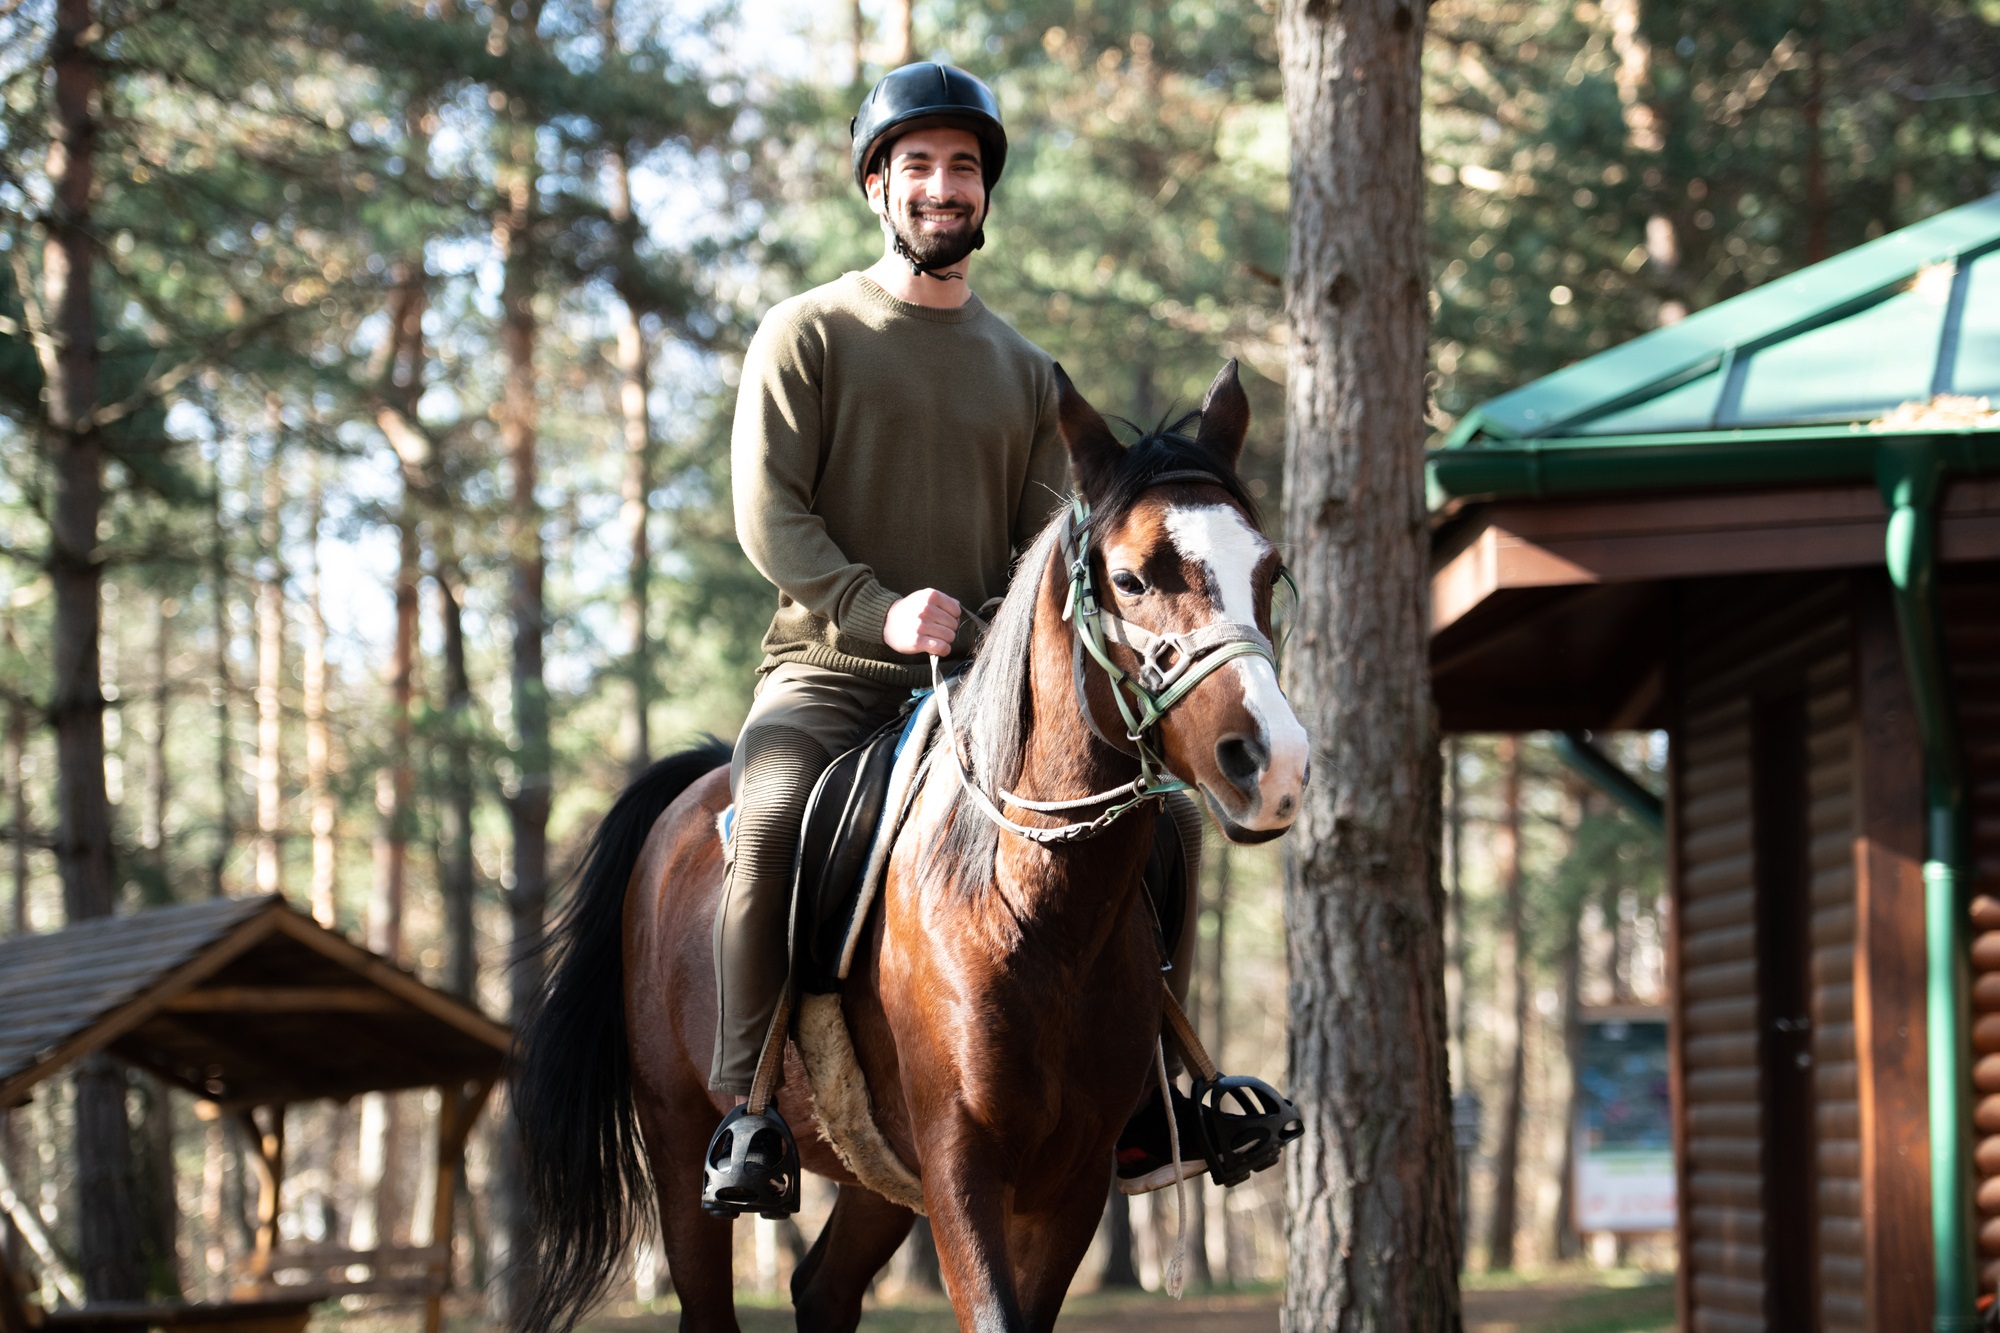 Reiter-Überblick: Geschenke für Pferd, Reiter & Trainer, Ausrüstung für Reitturniere & mehr